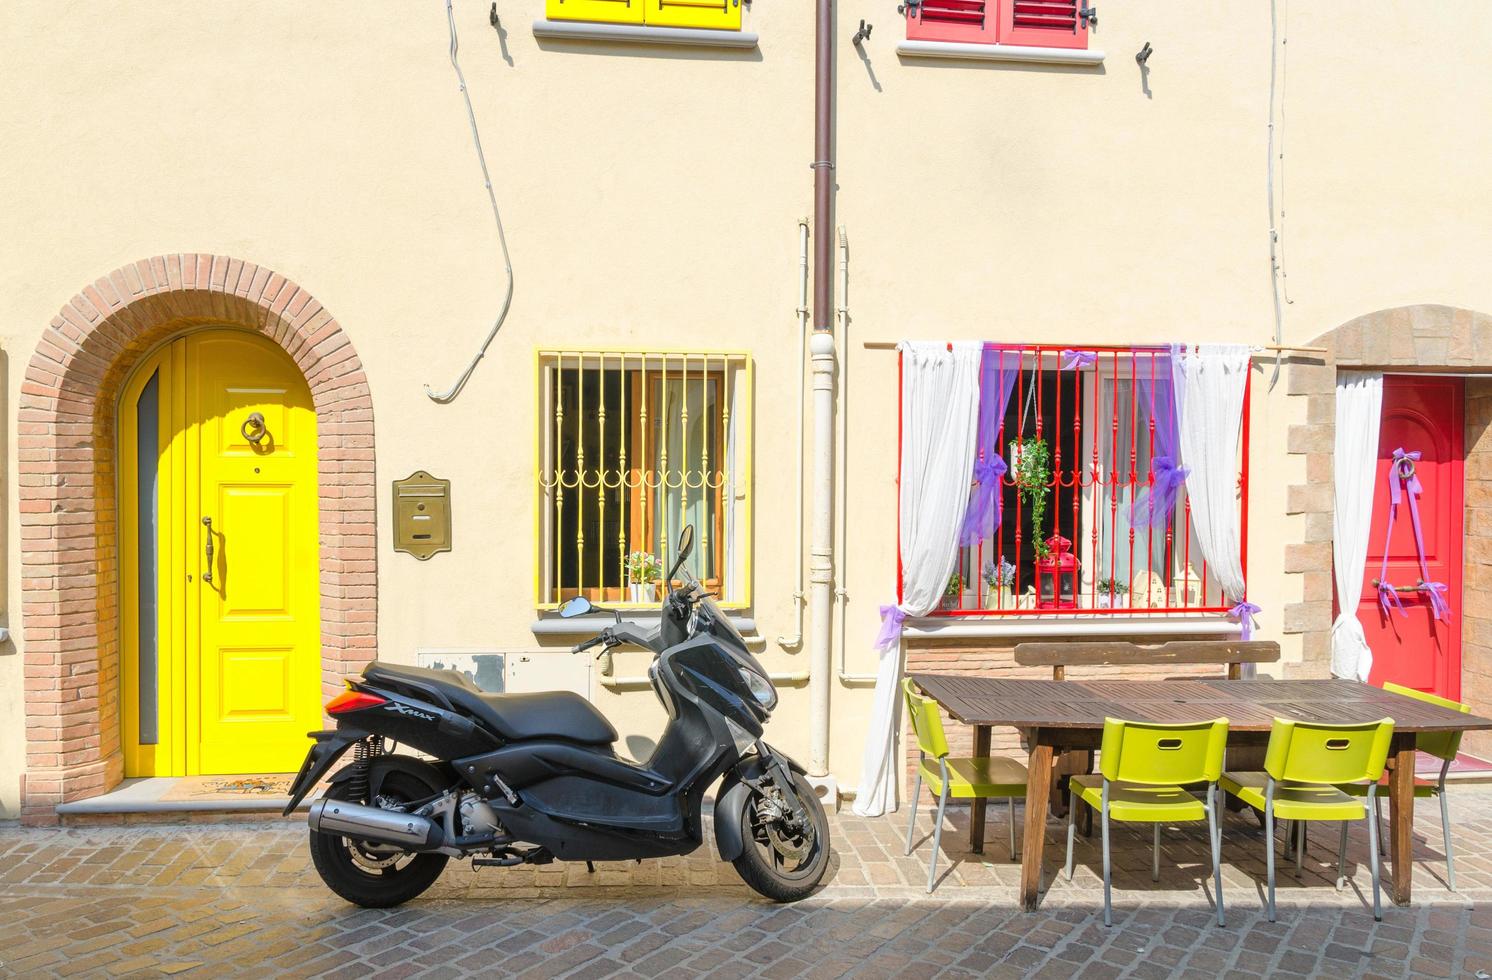 Rimini, Italië, 19 september 2018 tafel met stoelen en motorfiets fiets scooter geparkeerd op geplaveide straat in de buurt van gebouwen met kleurrijke muur, deur en ramen in het historische stadscentrum foto